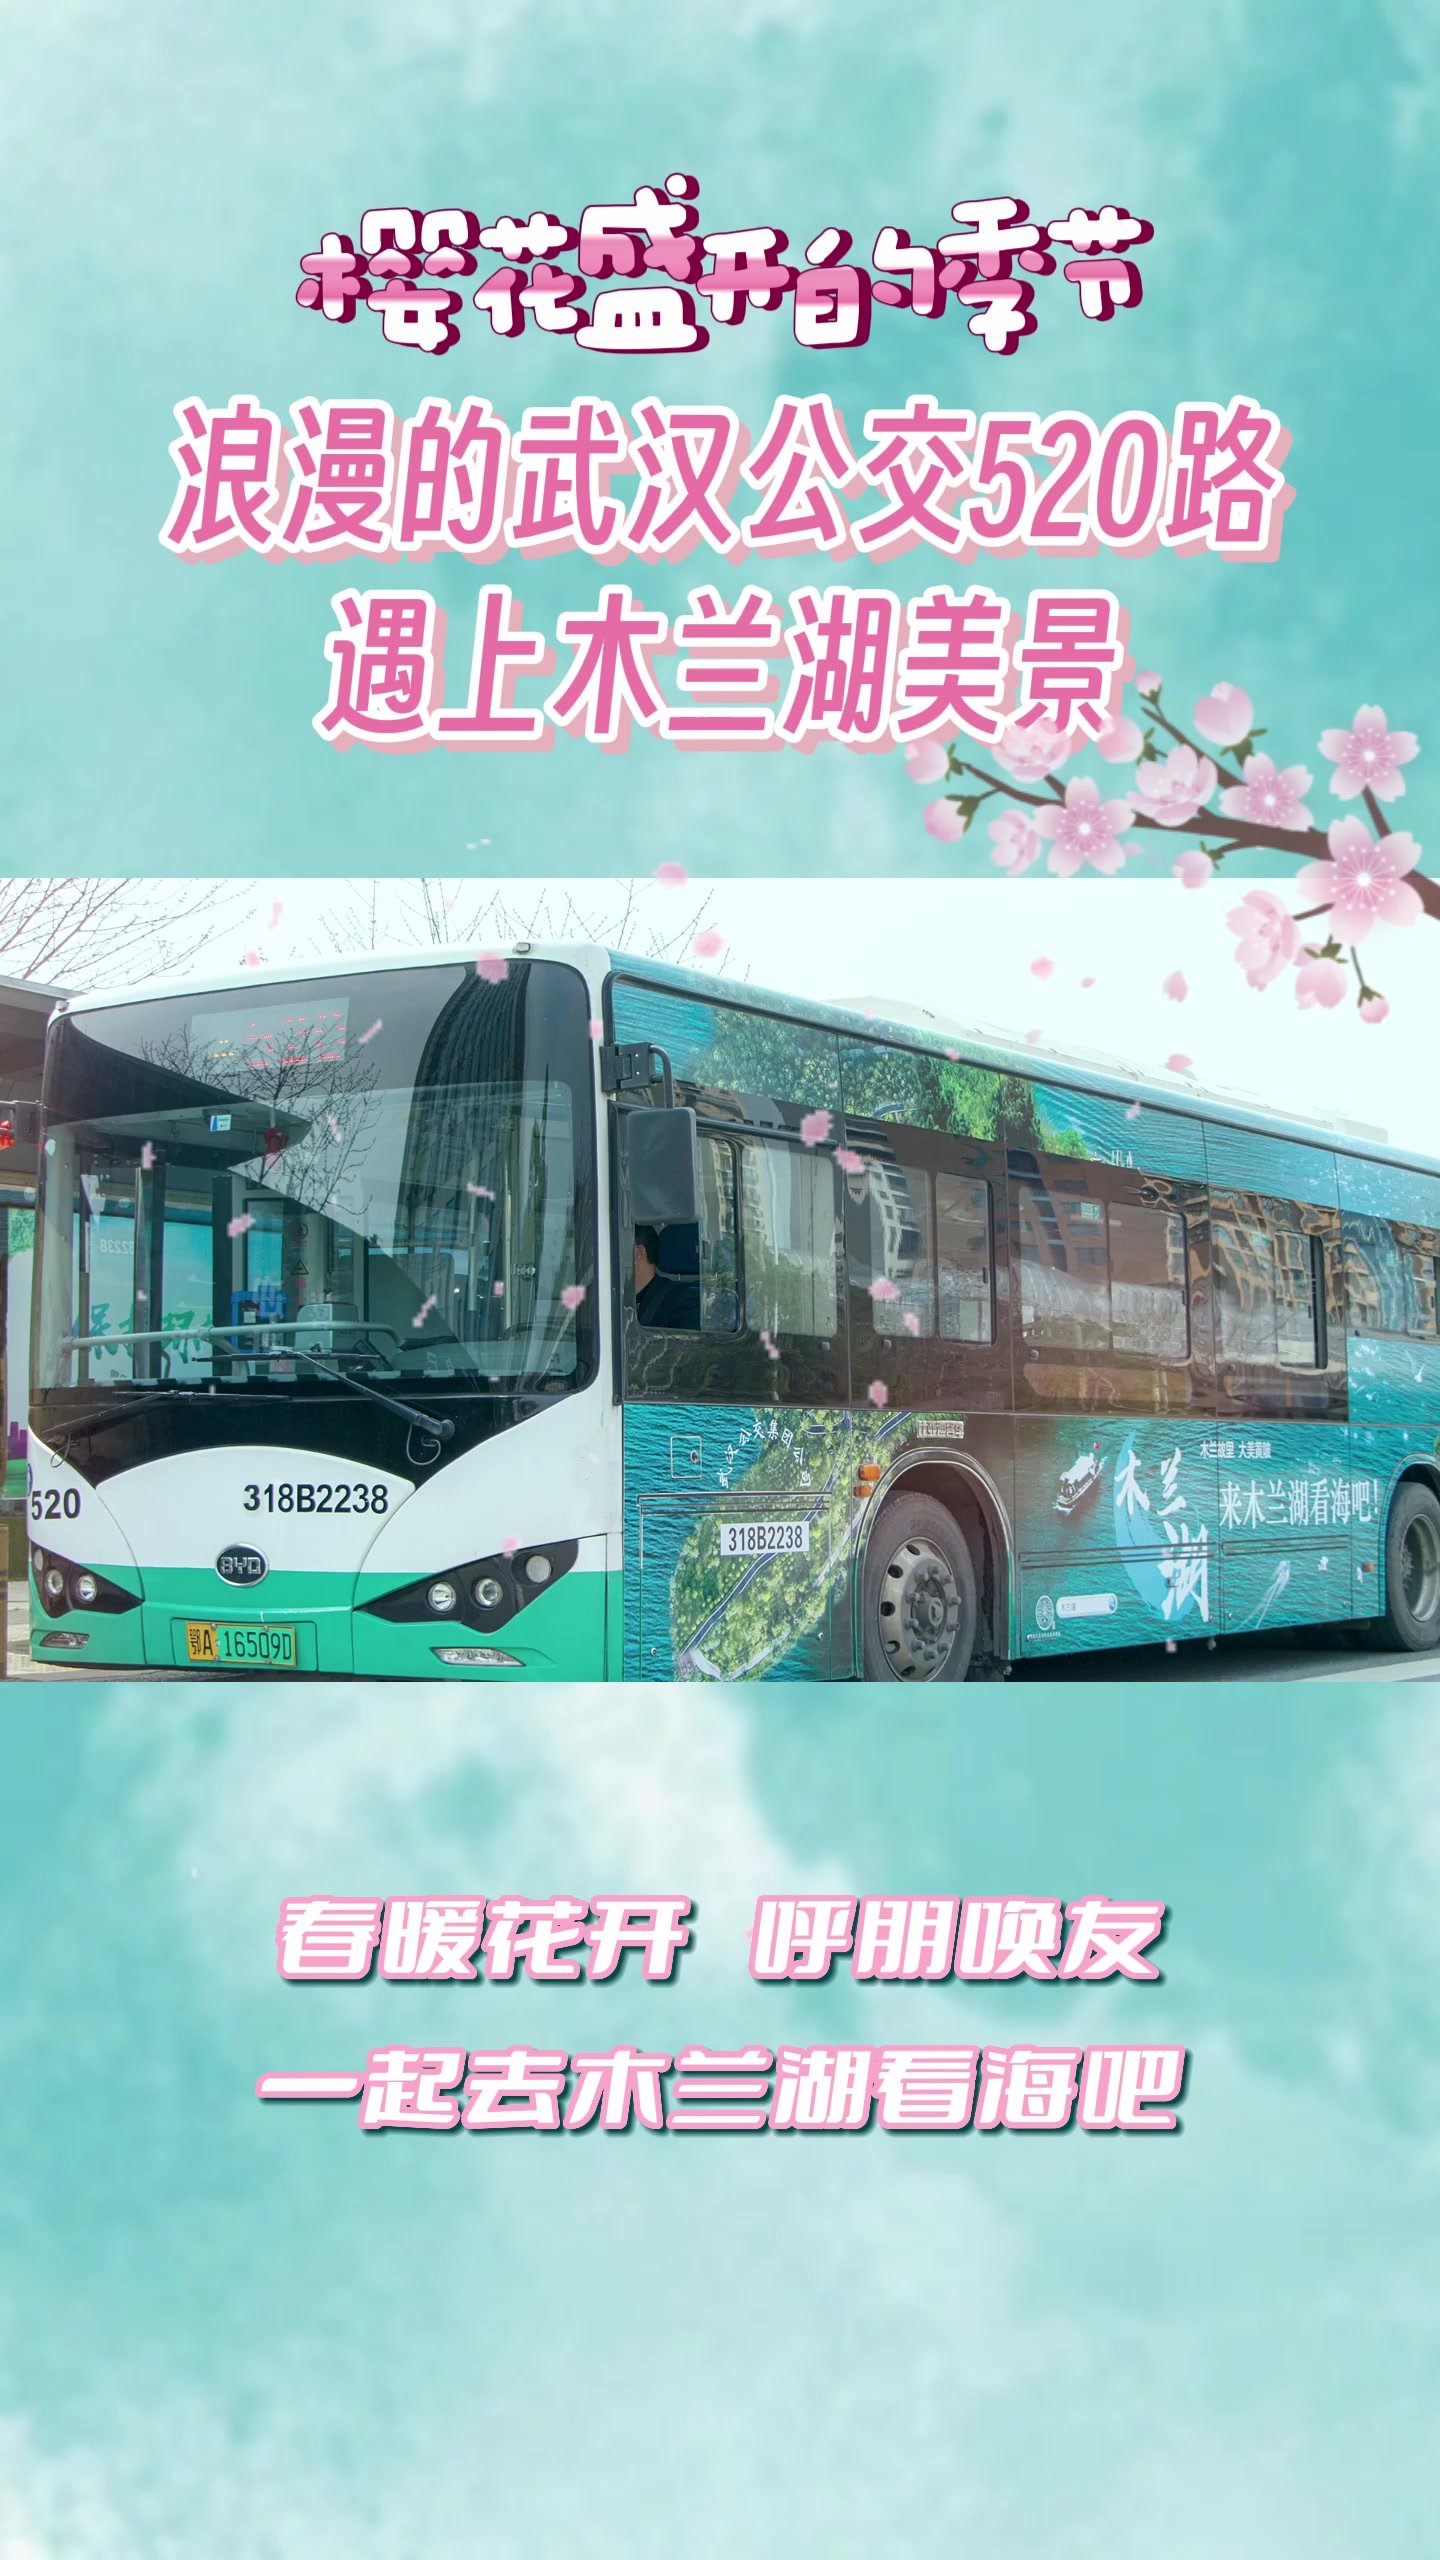 樱花盛开的季节 浪漫的武汉公交520路遇上木兰湖美景